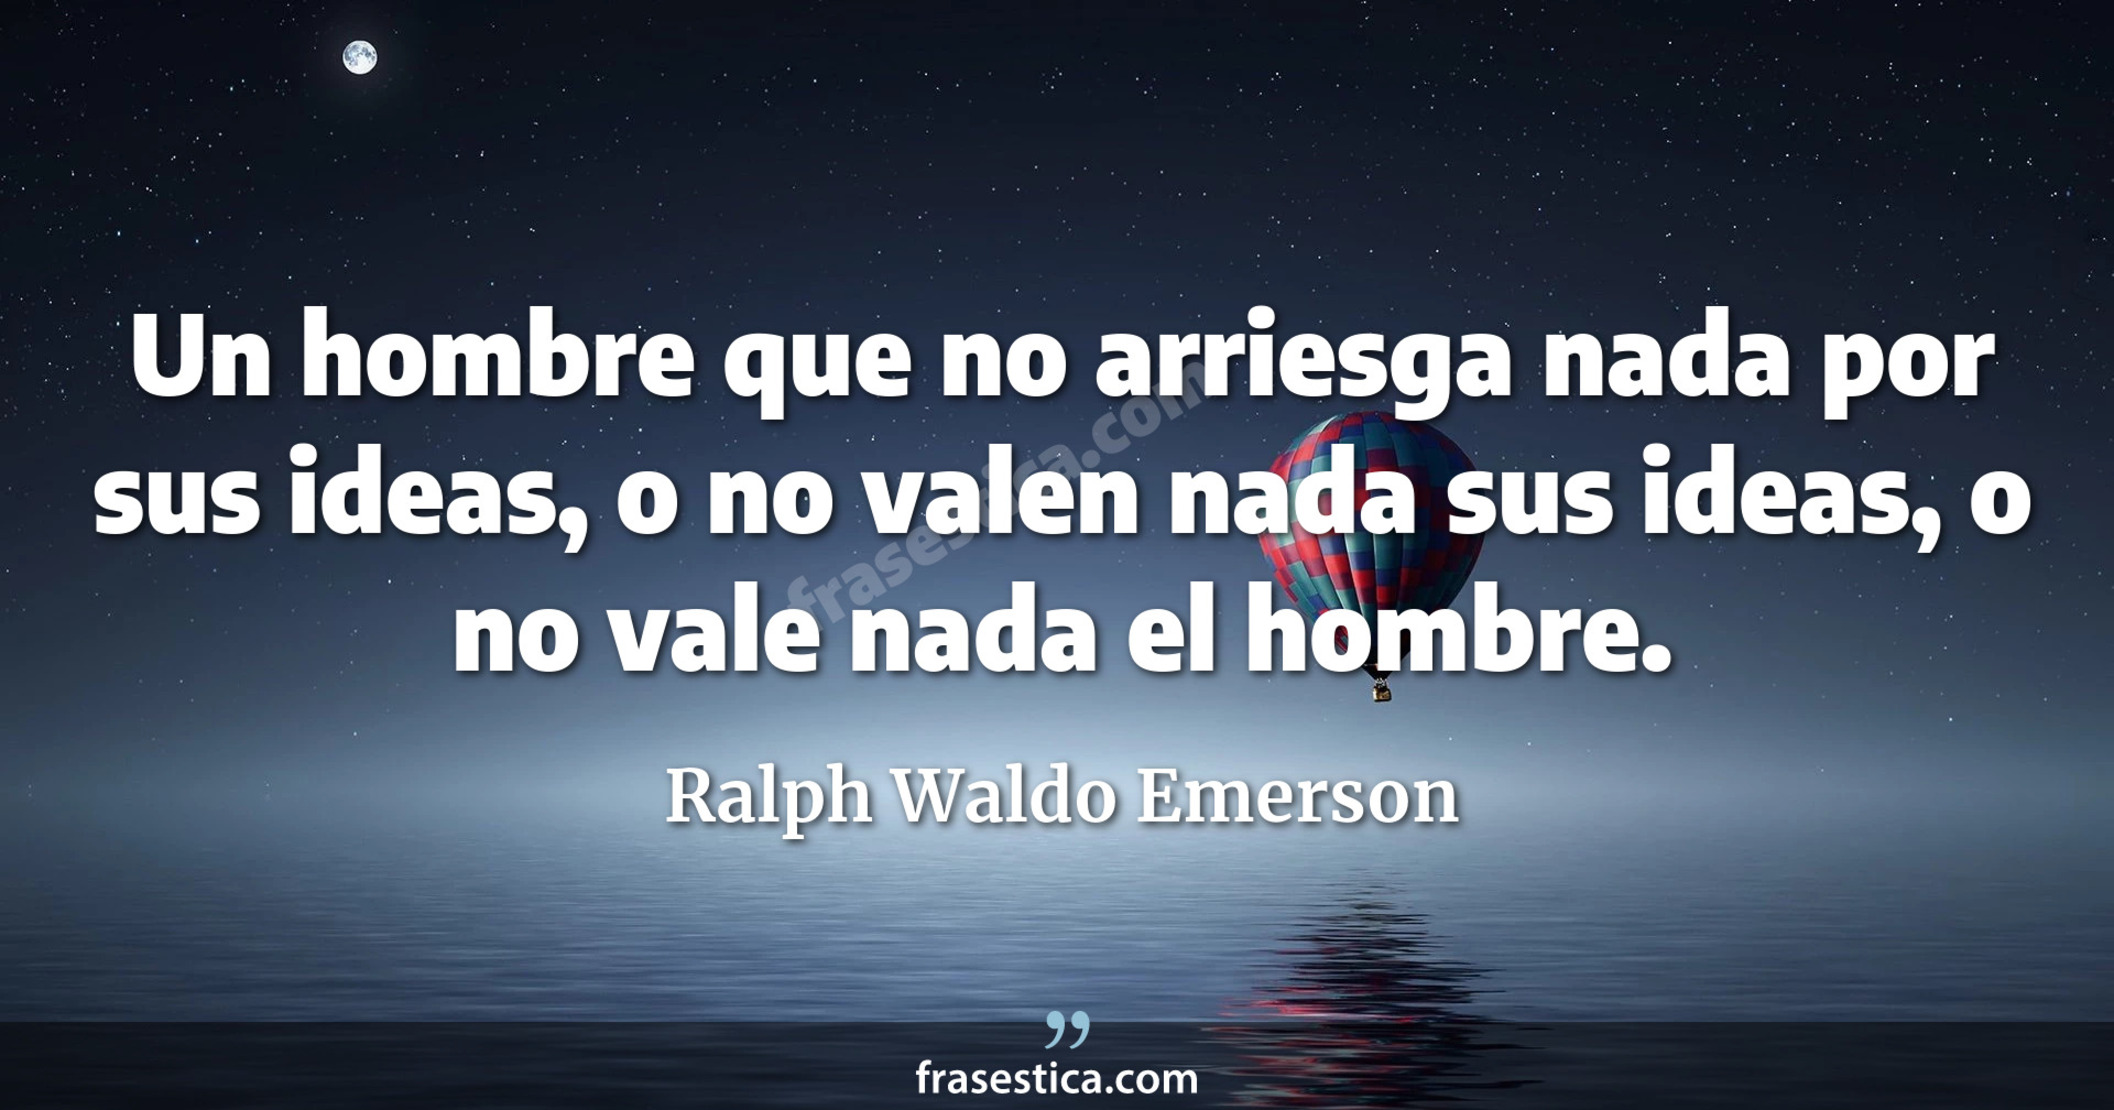 Un hombre que no arriesga nada por sus ideas, o no valen nada sus ideas, o no vale nada el hombre. - Ralph Waldo Emerson